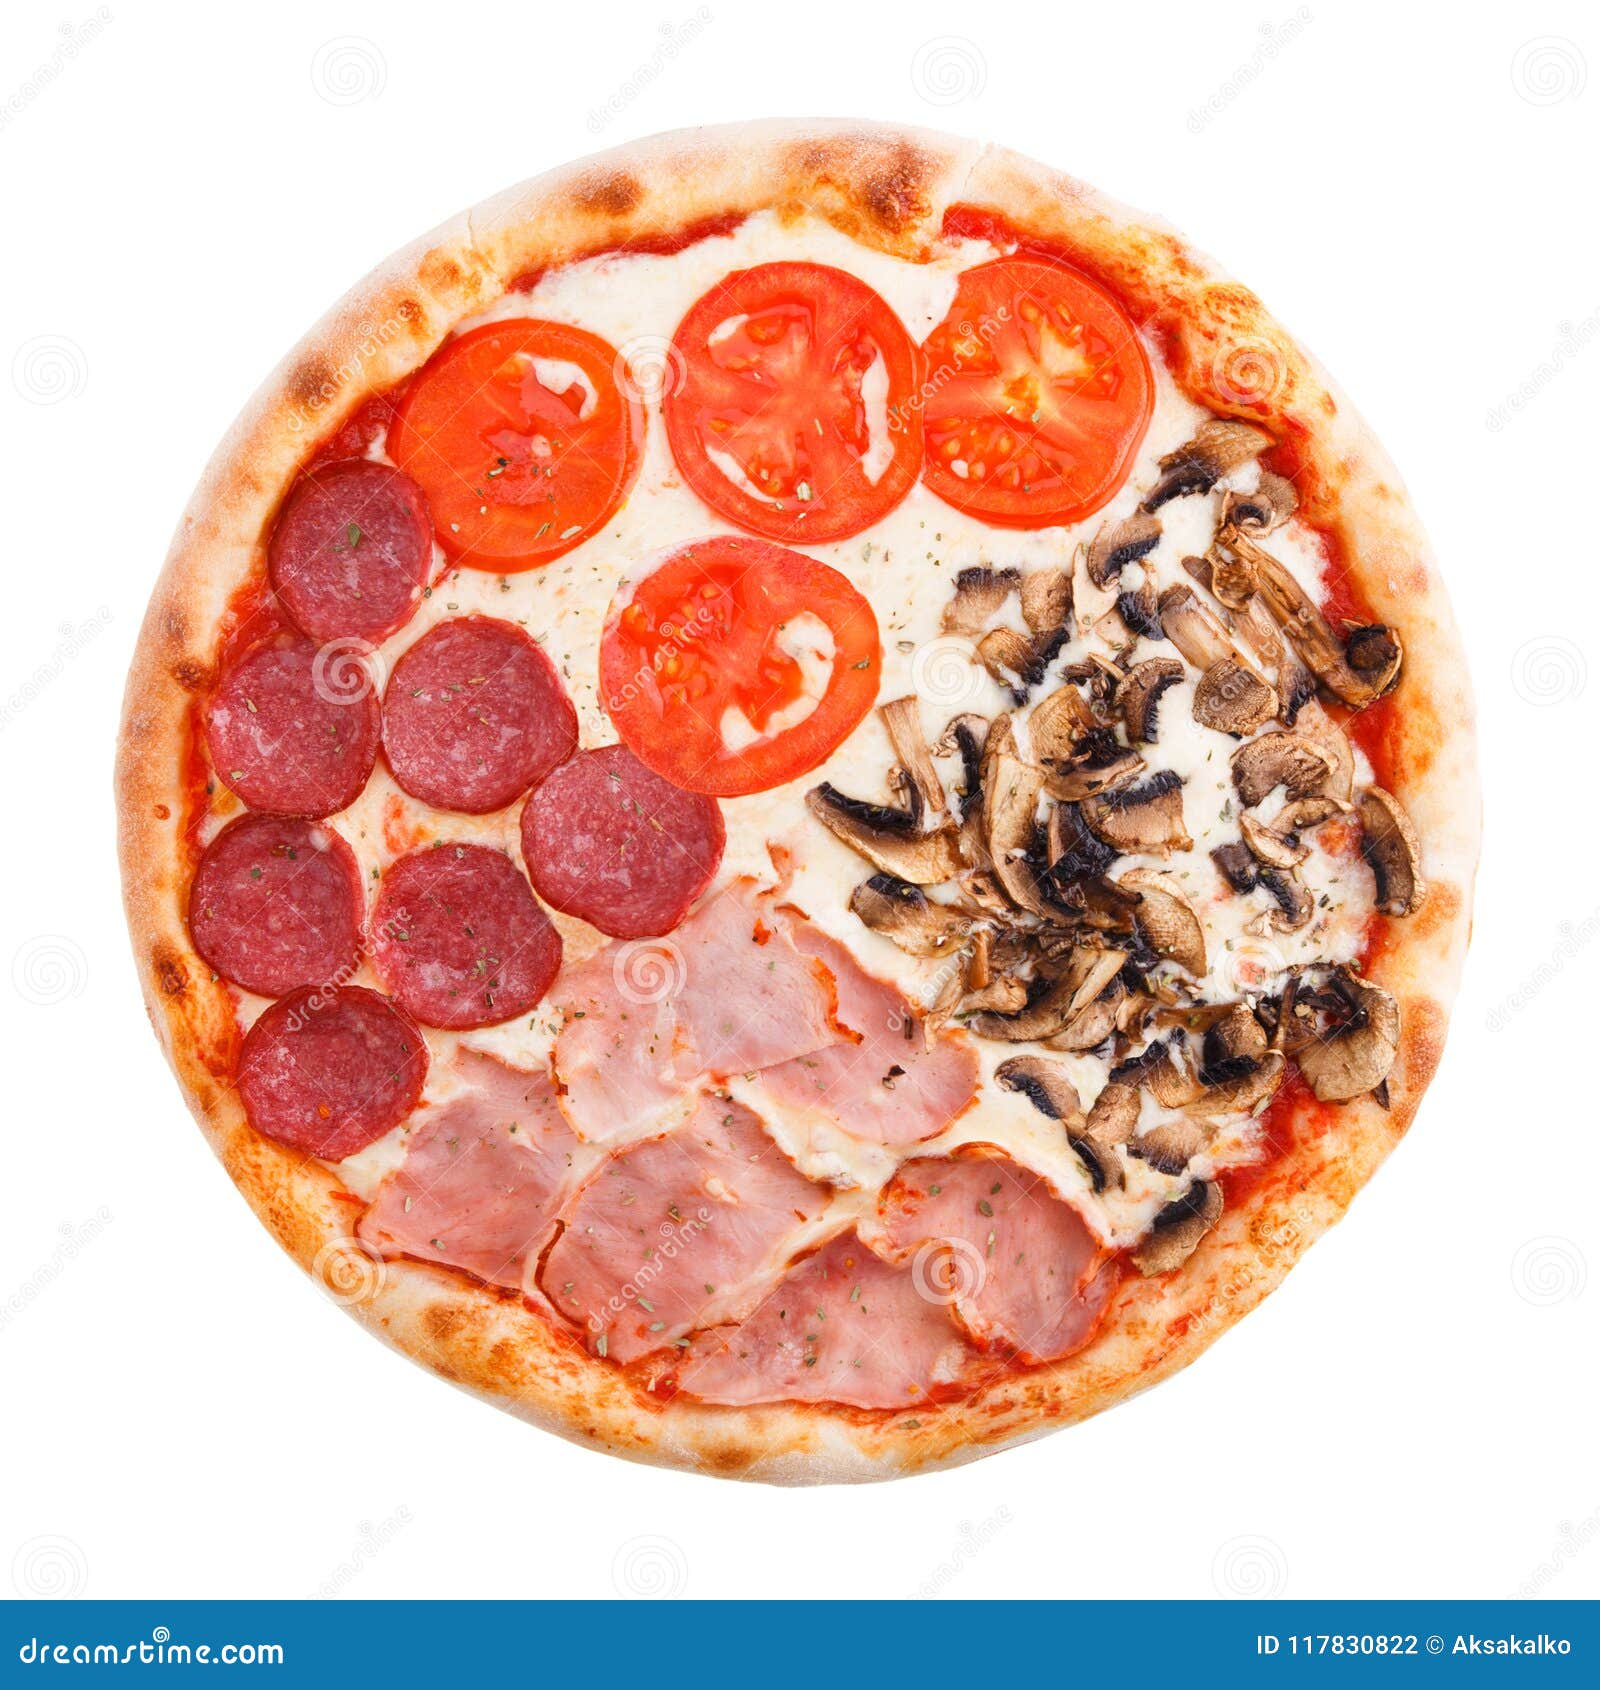 итальянская пицца четыре сезона фото 109